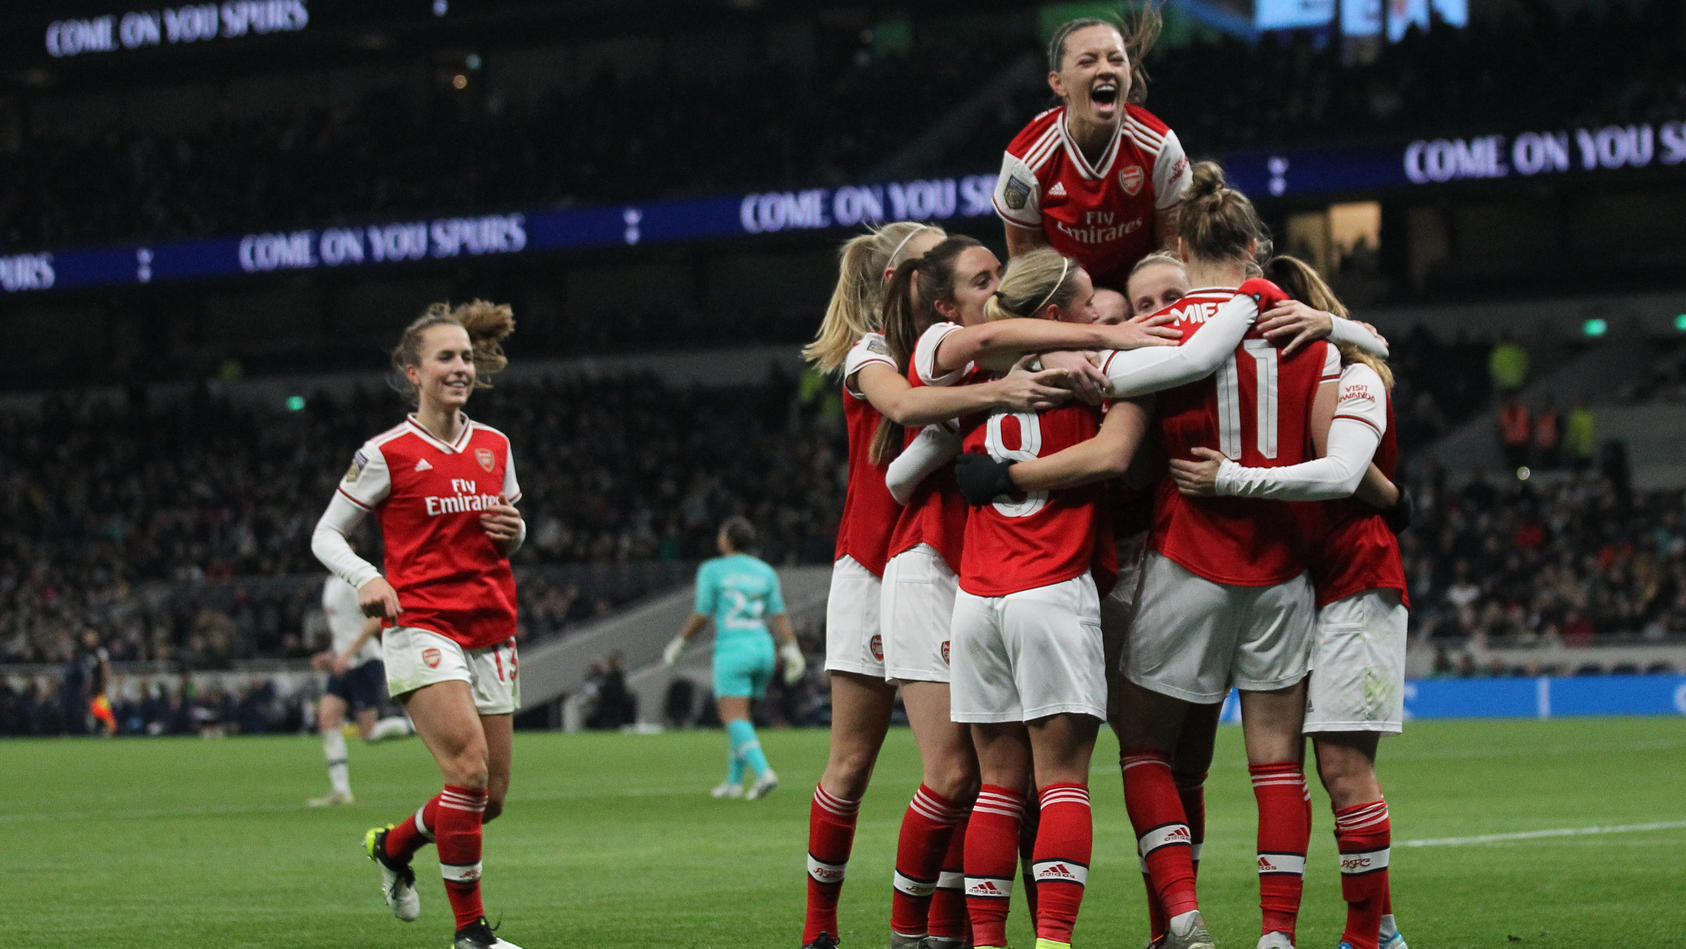 Zuschauerrekord im englischen Frauenfußball: Arsenal gegen Spurs